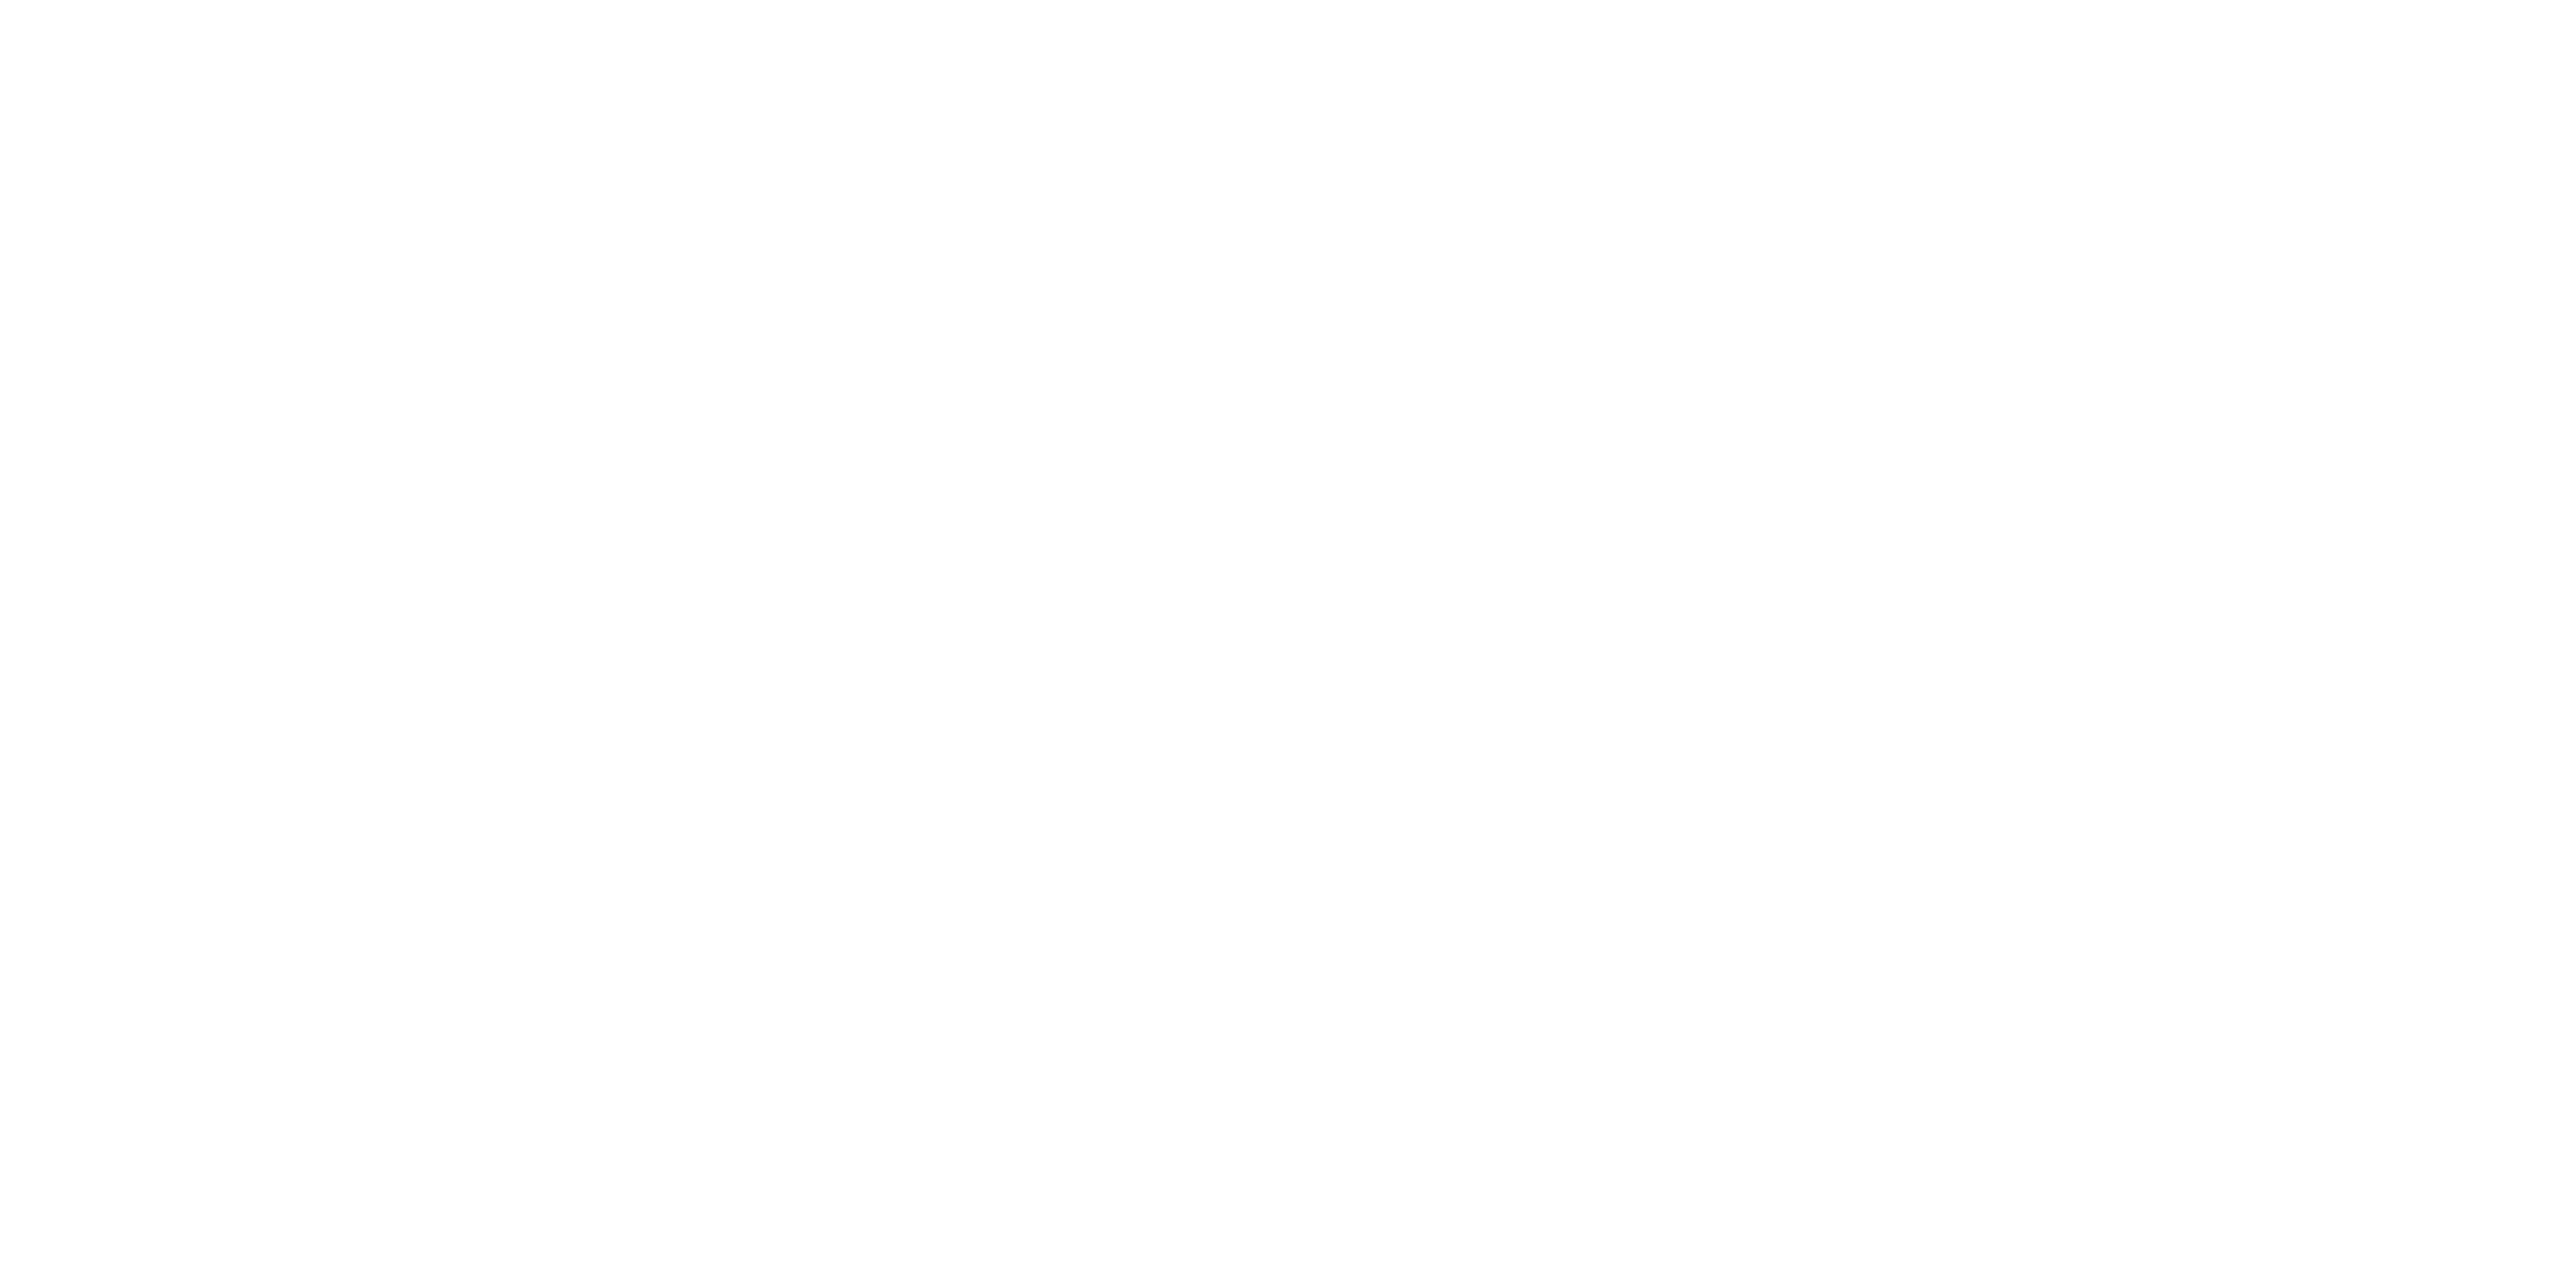 Death wish white logo